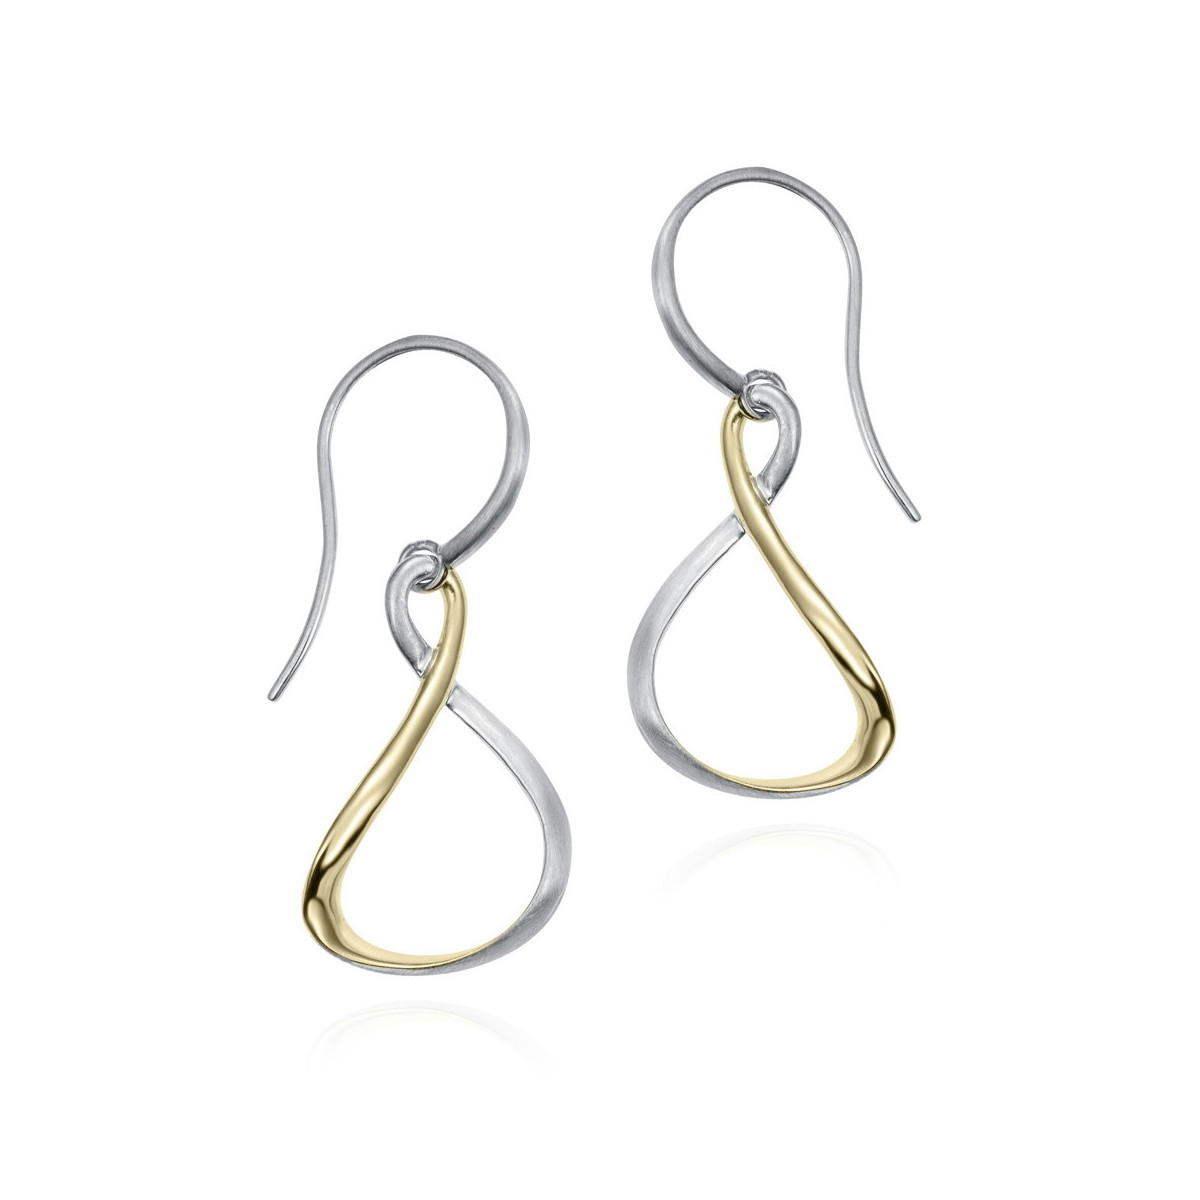 VENICE Earrings in Silver. 18k Gold Vermeil